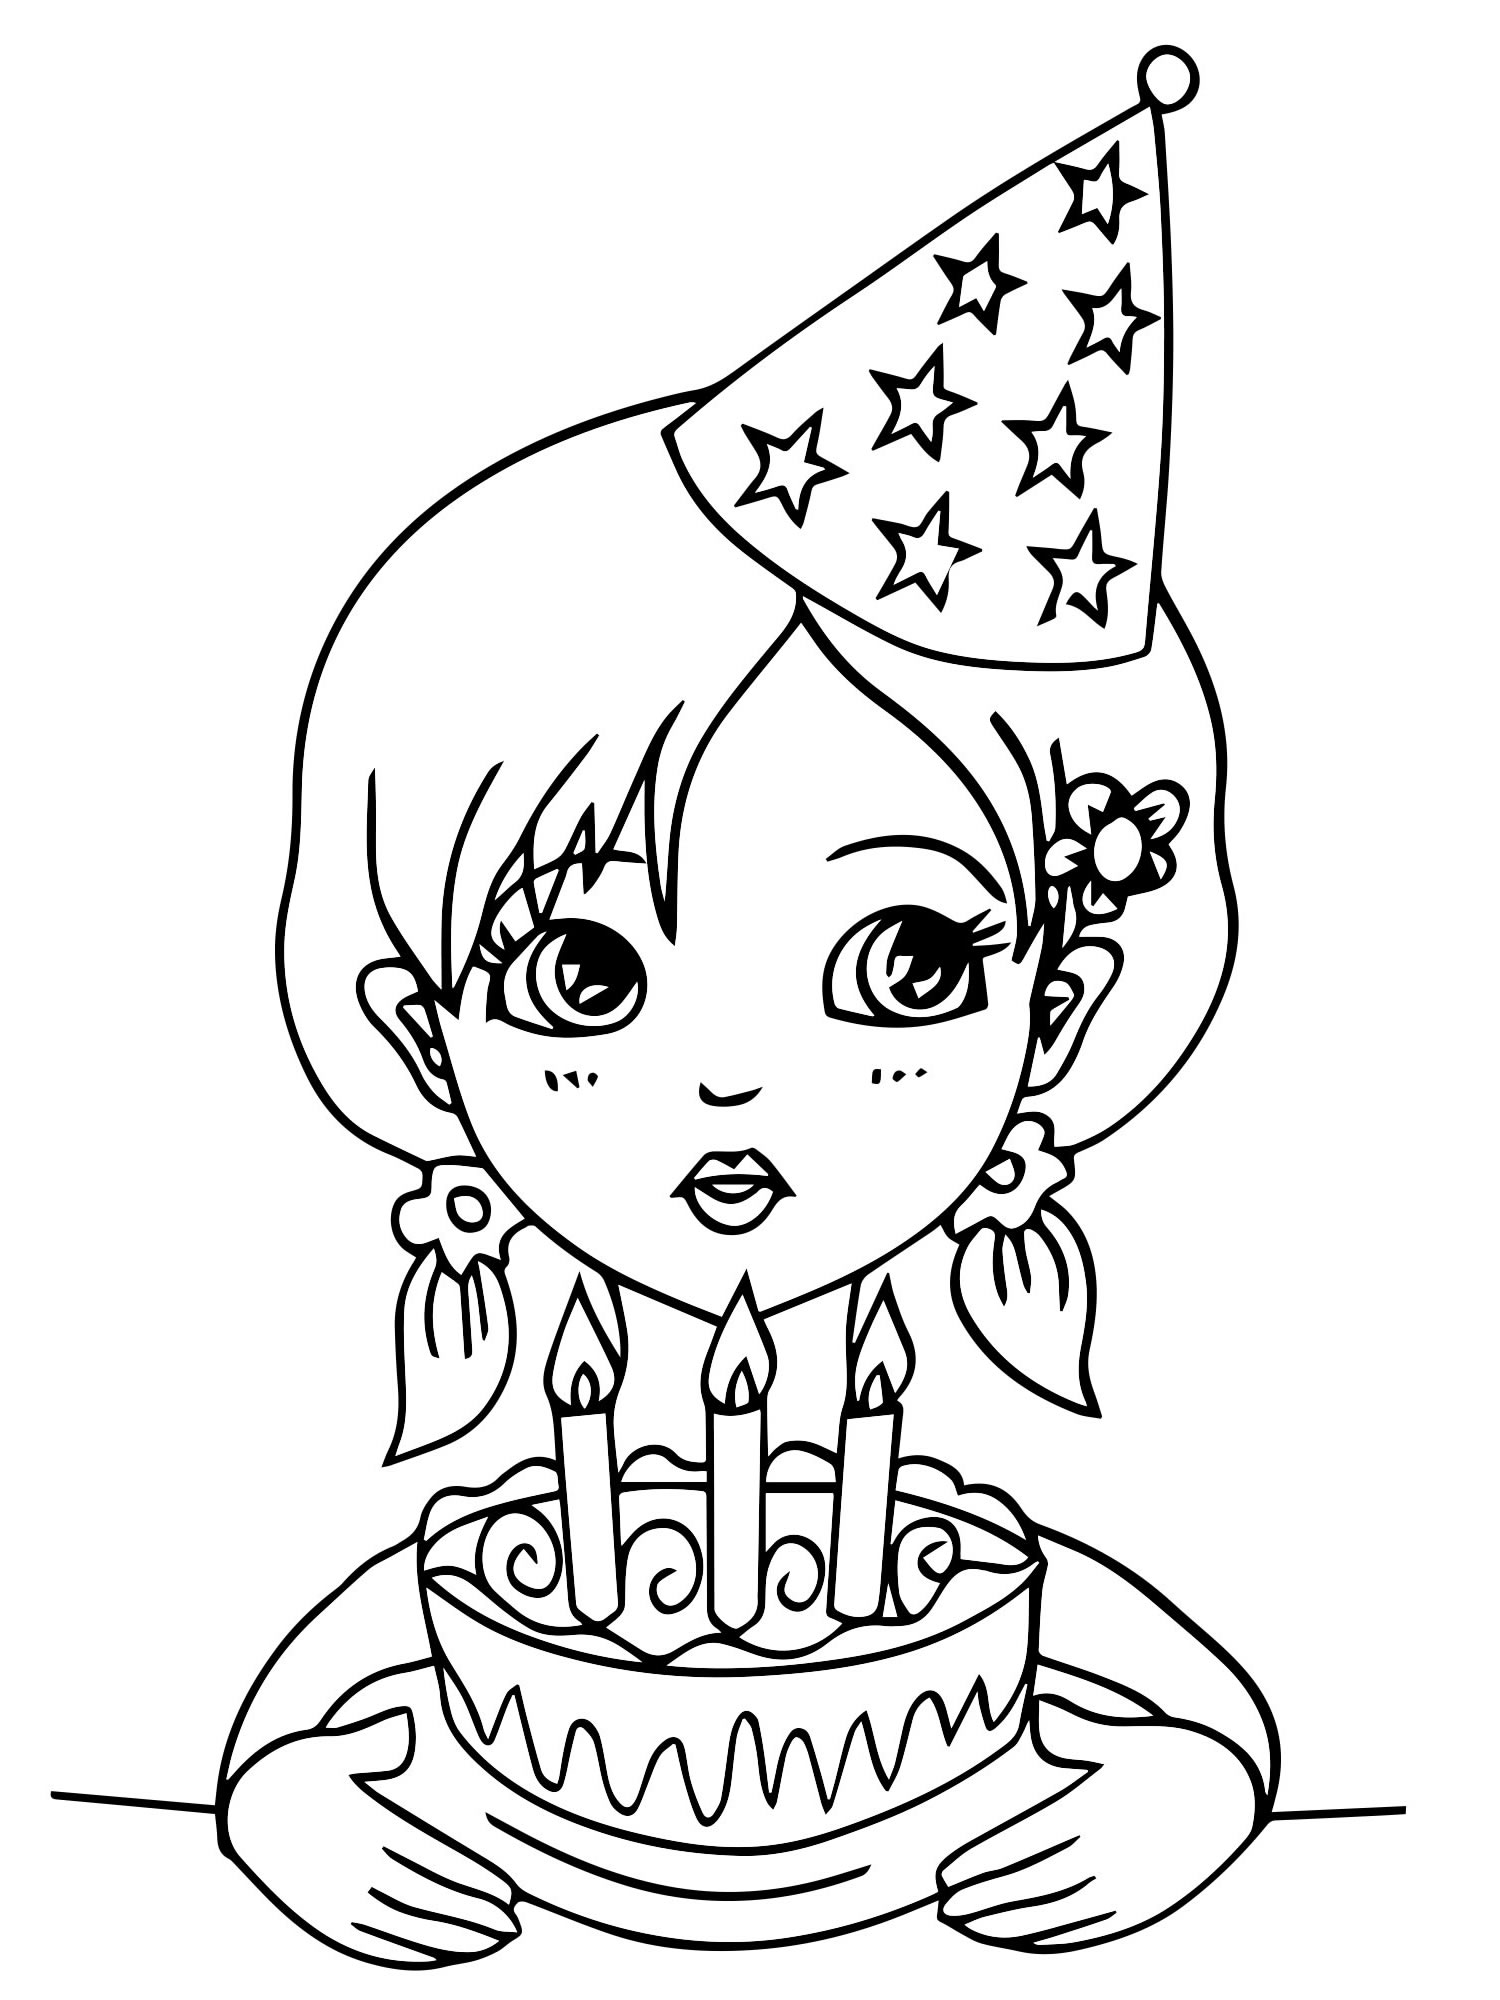 Открытка раскраска с днем рождения, поздравление для девочки. Распечатать картинку-раскраску